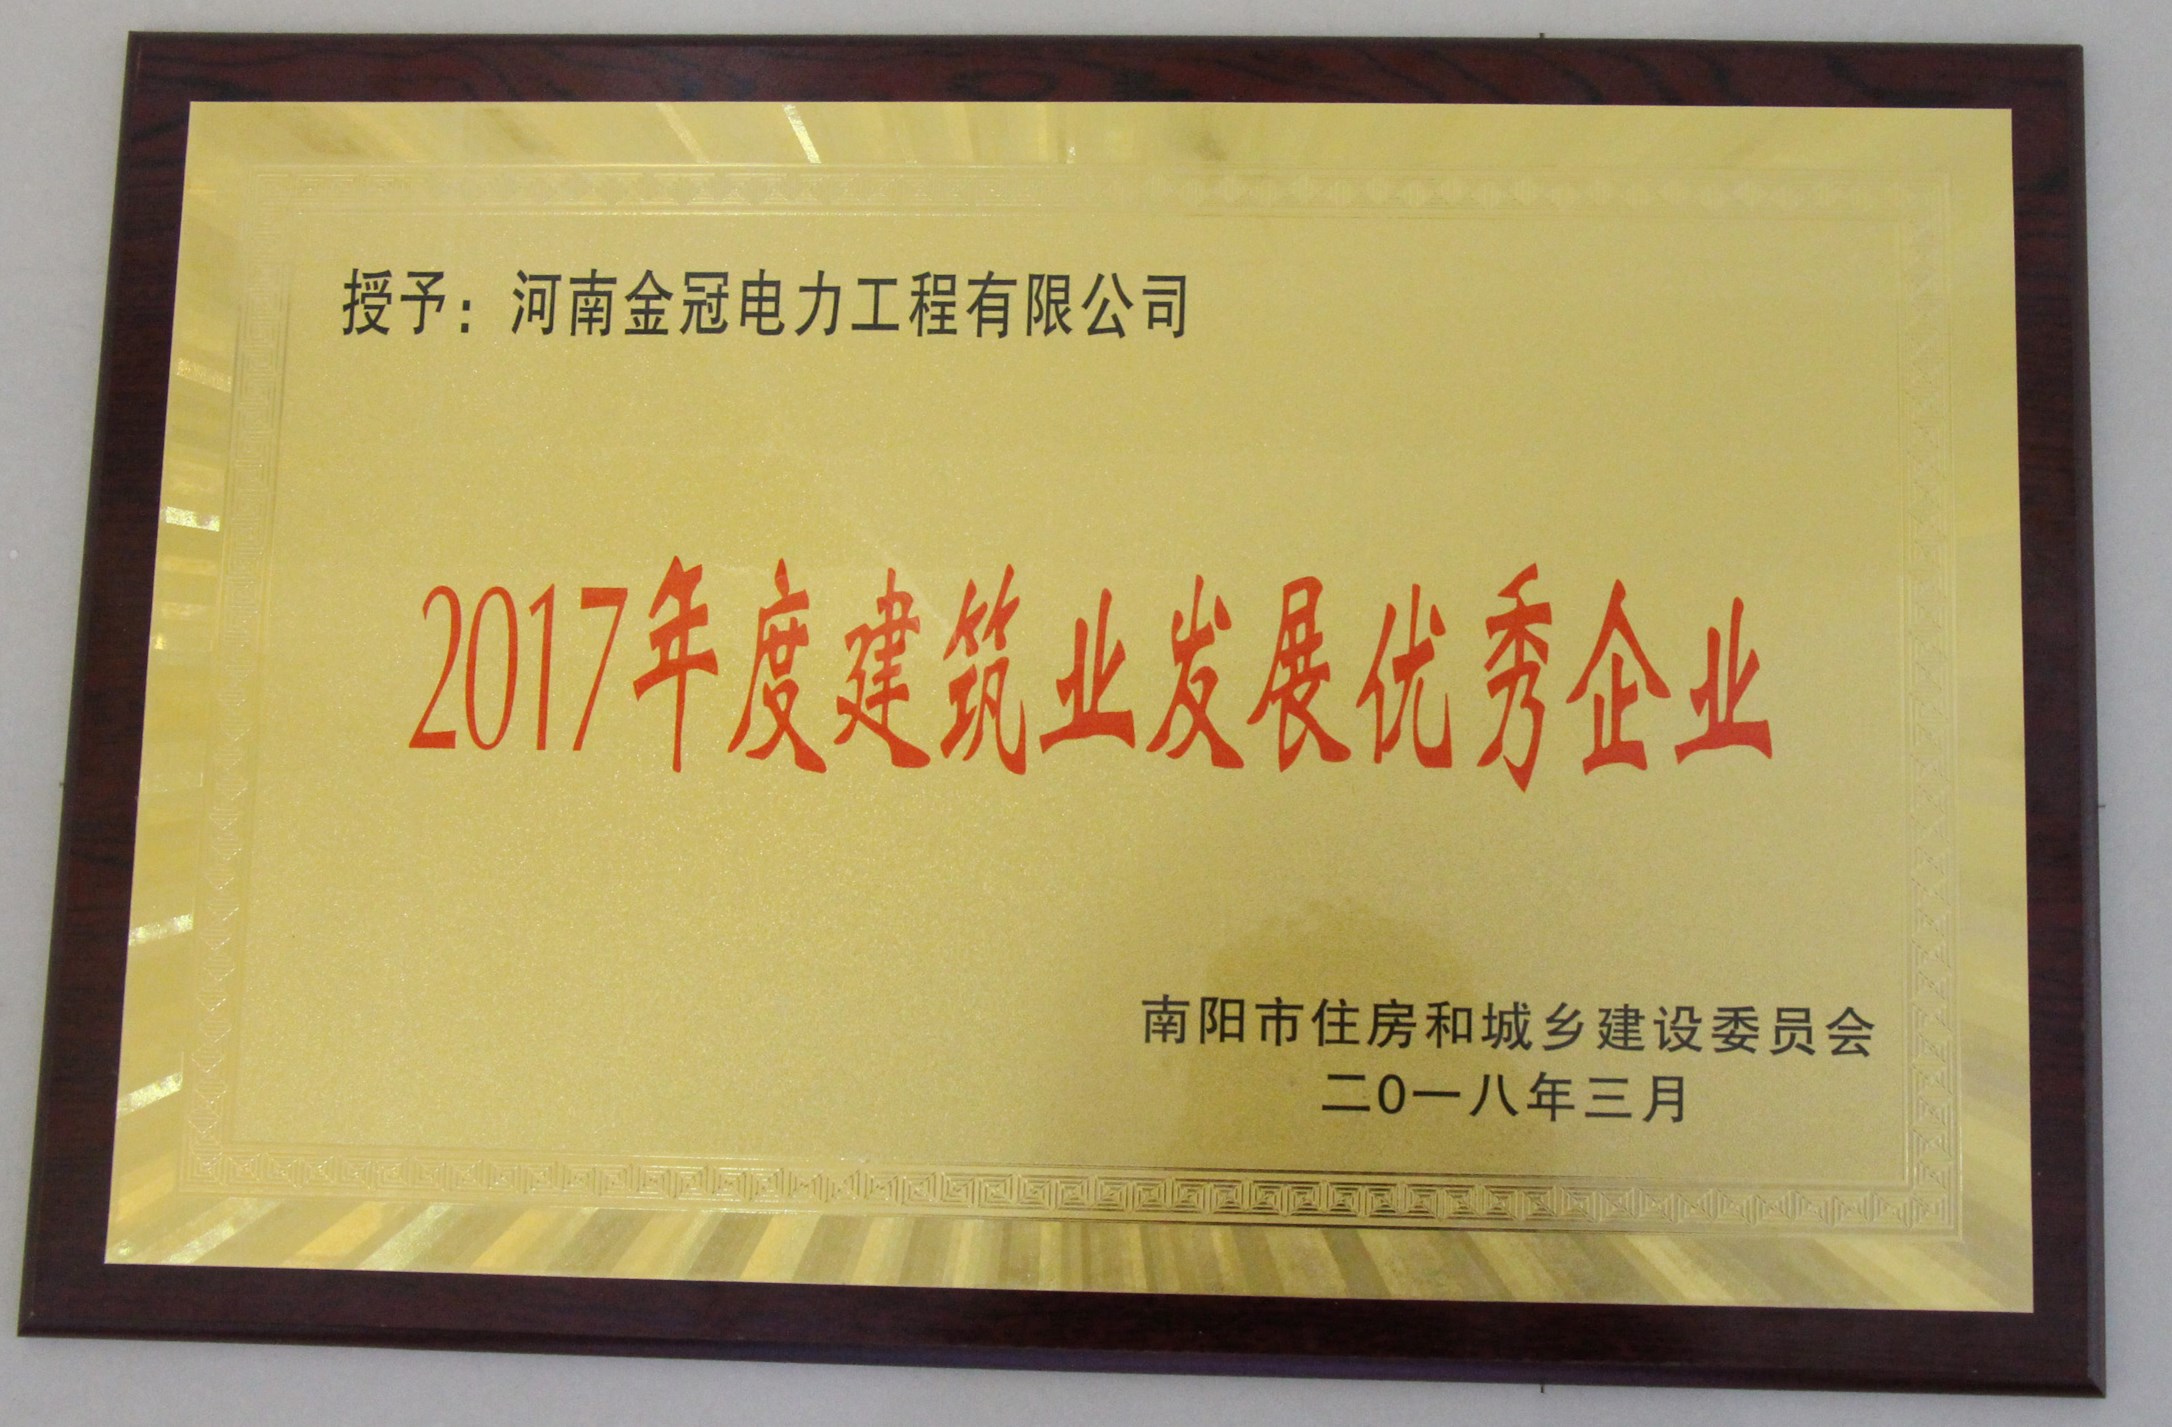 【喜讯】我公司荣获2017年南阳市建筑业发展优秀企业殊荣